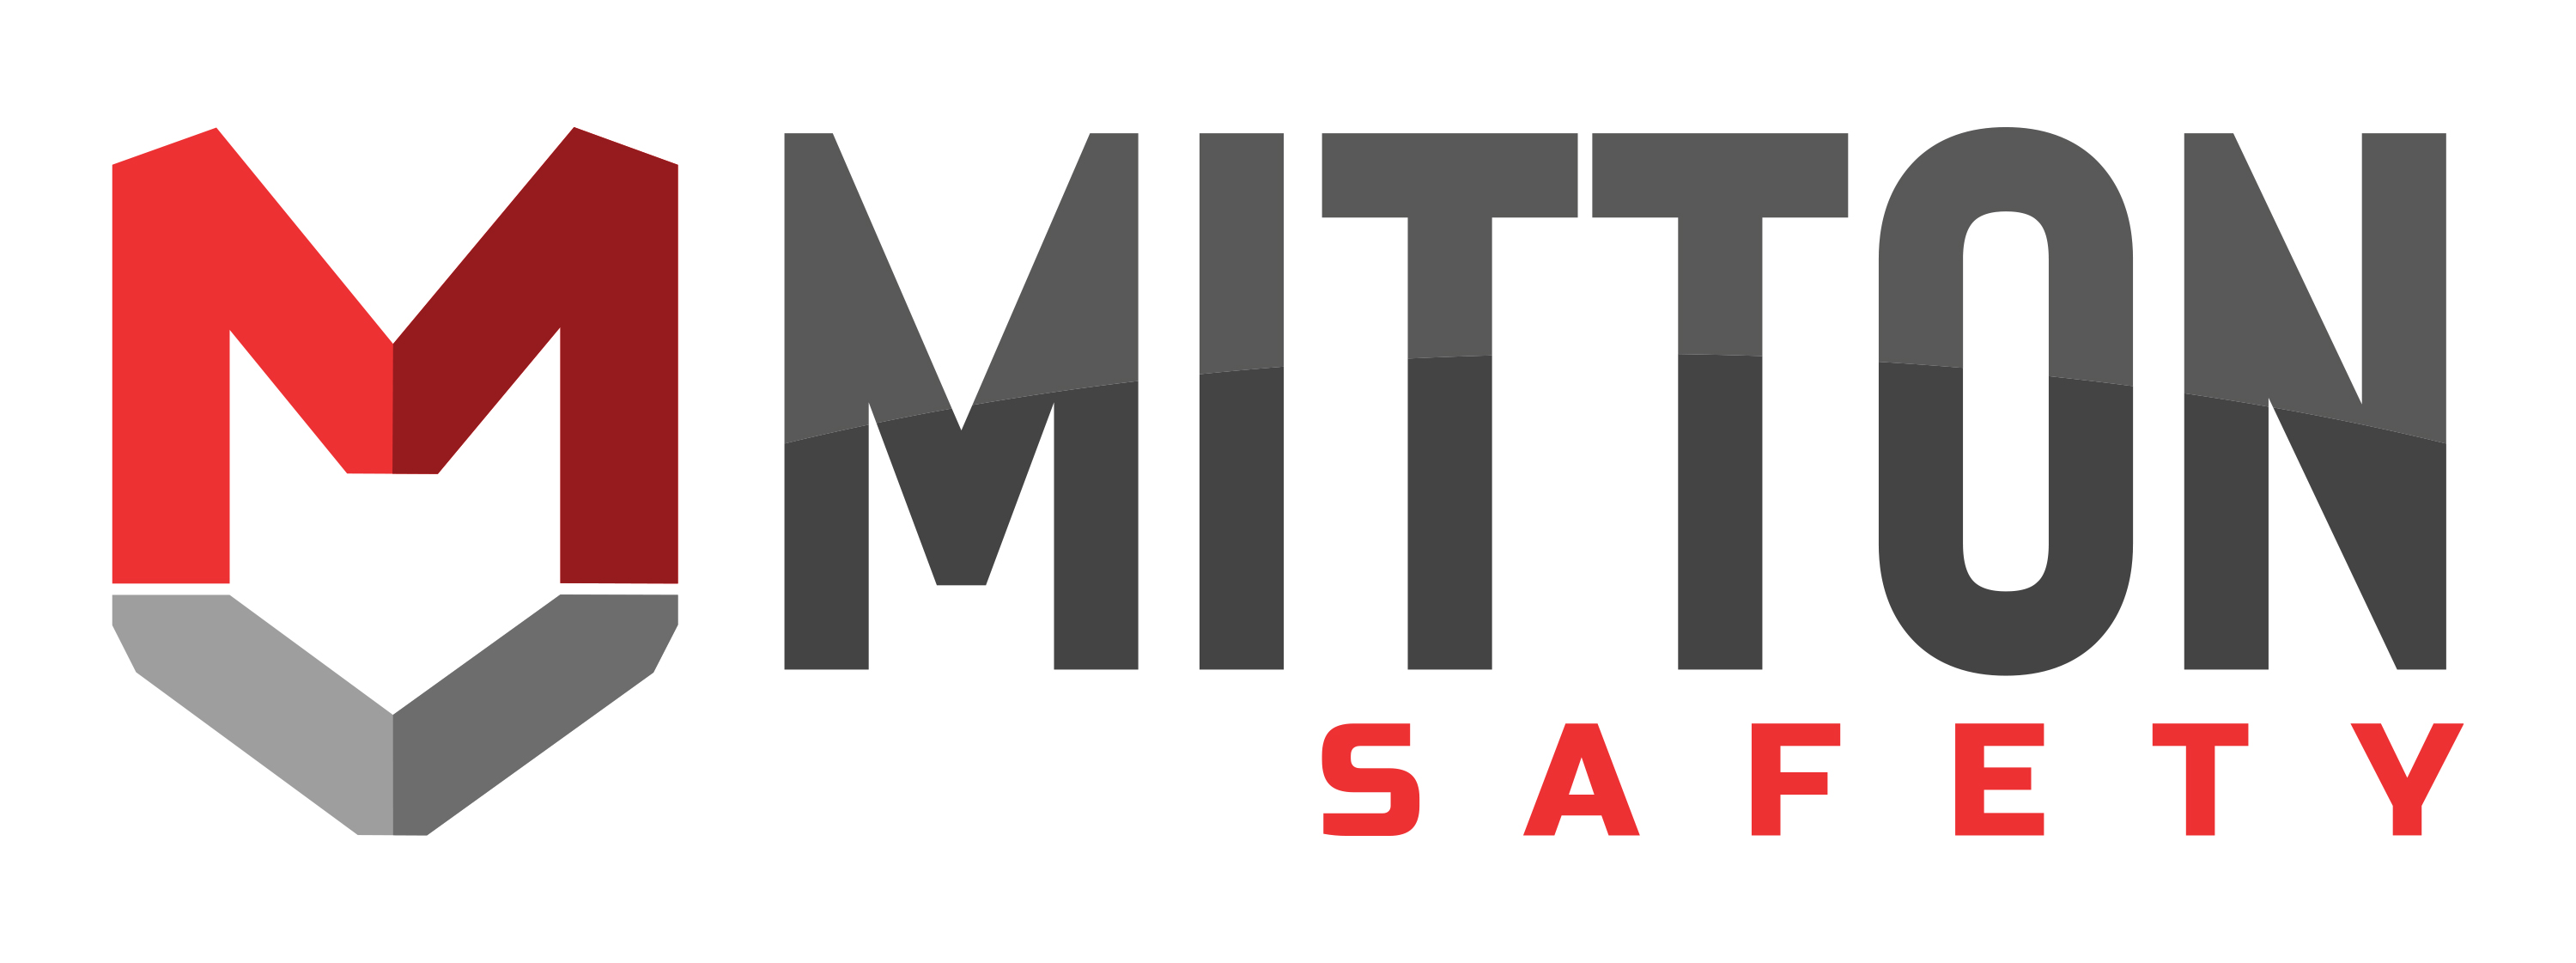 Mitton Safety-1_1.jpg